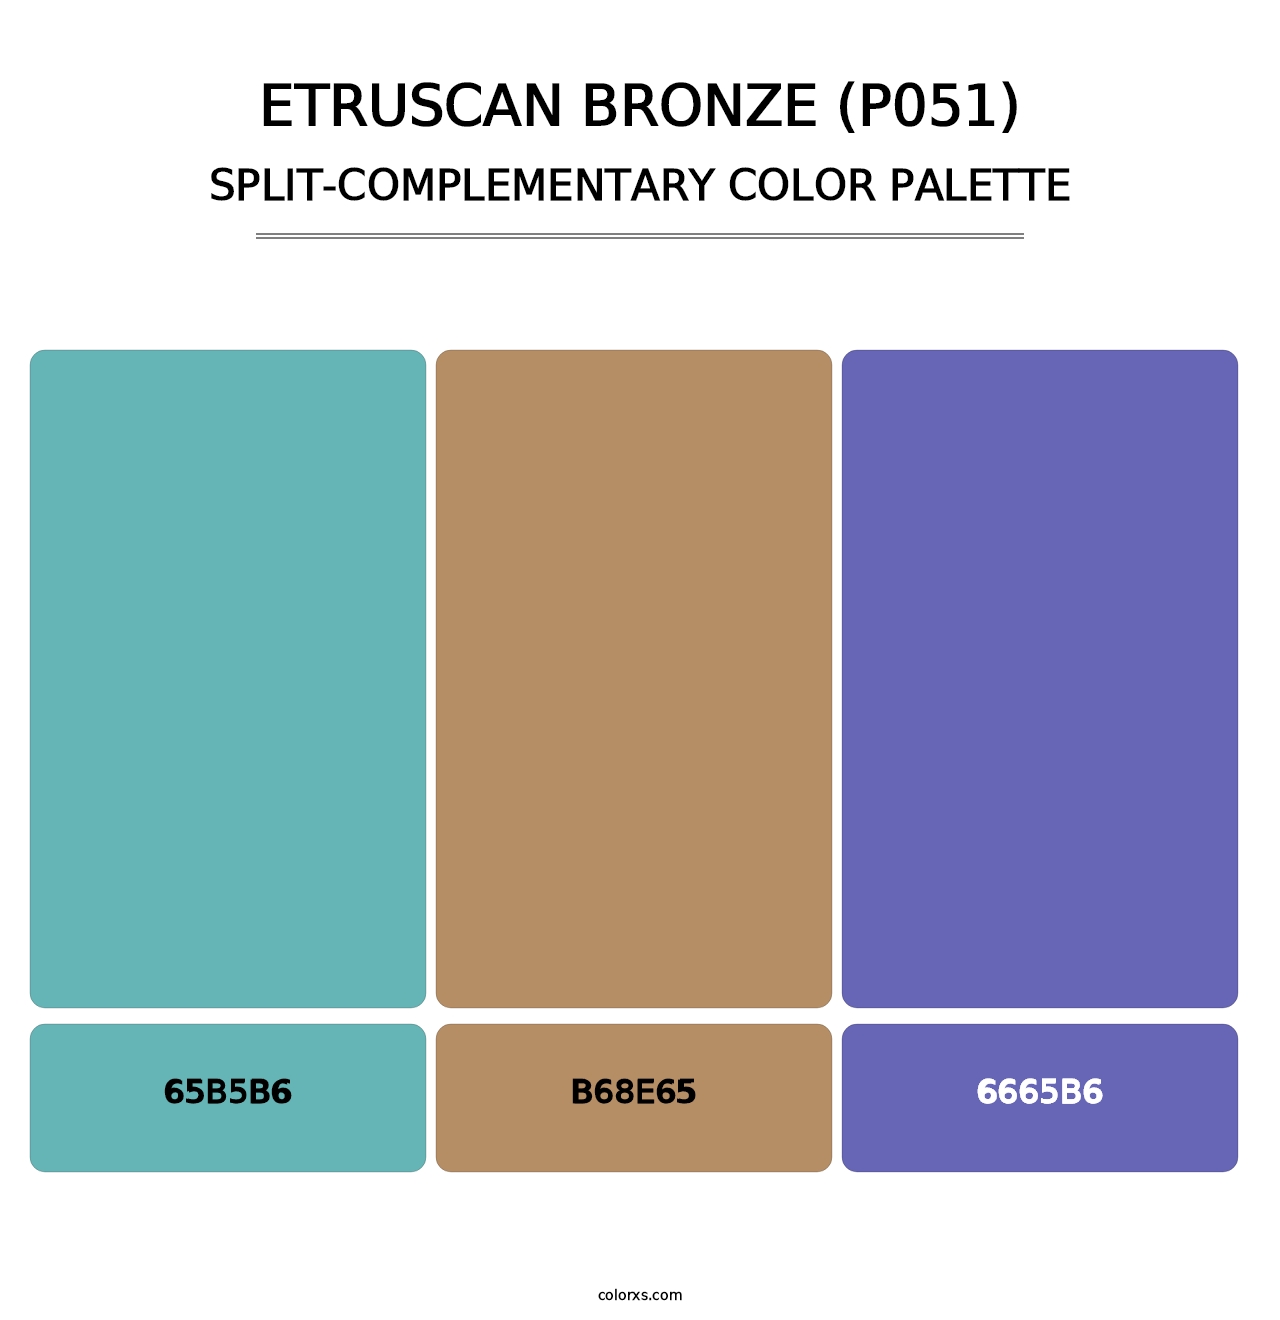 Etruscan Bronze (P051) - Split-Complementary Color Palette